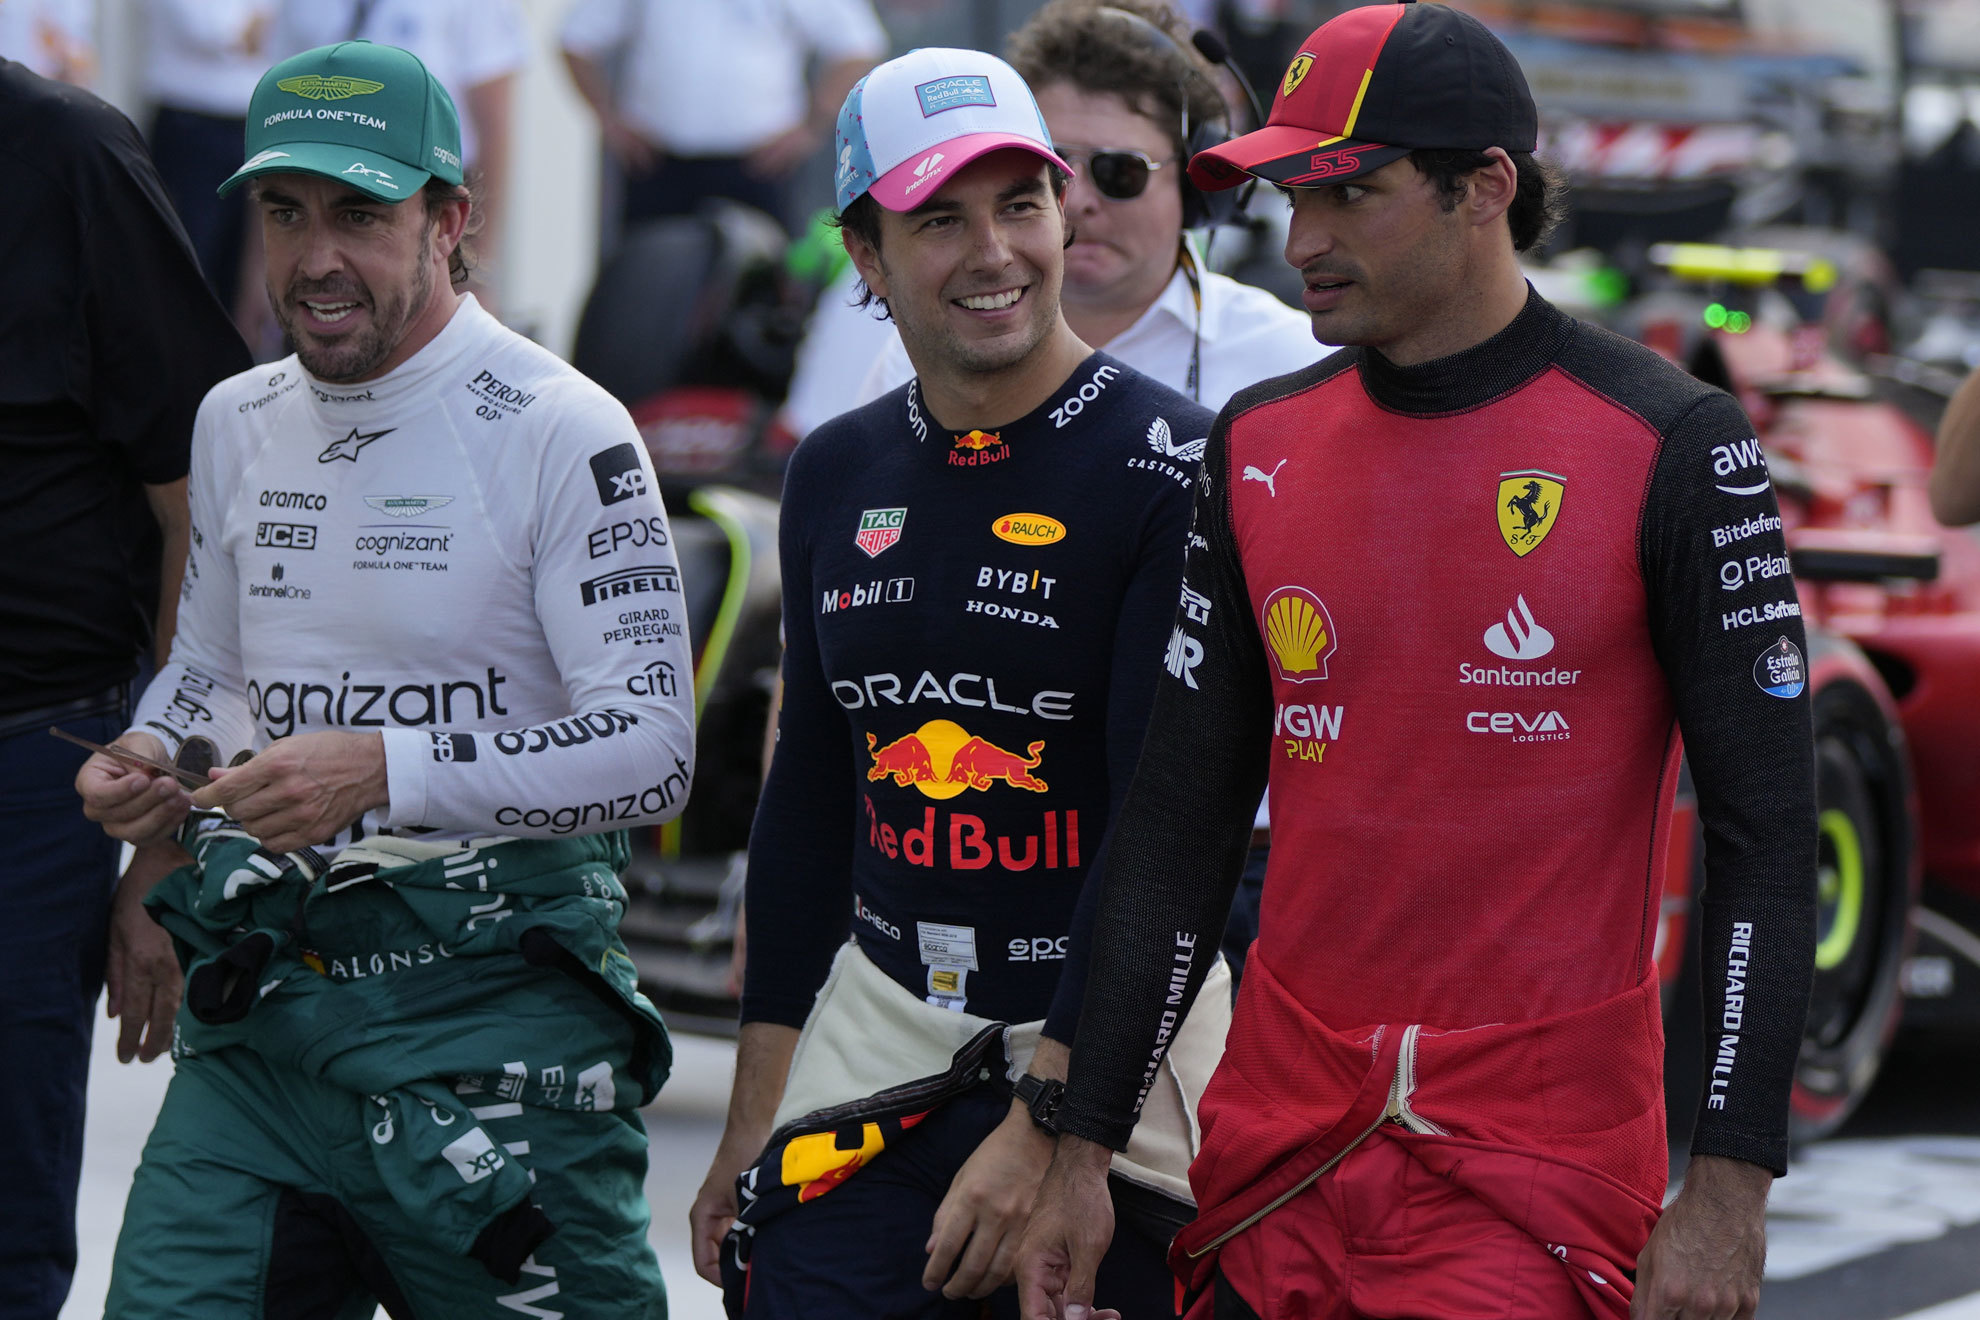 Otro accidente de Leclerc provoca el primer pleno latino: Checo... Alonso y Sainz!